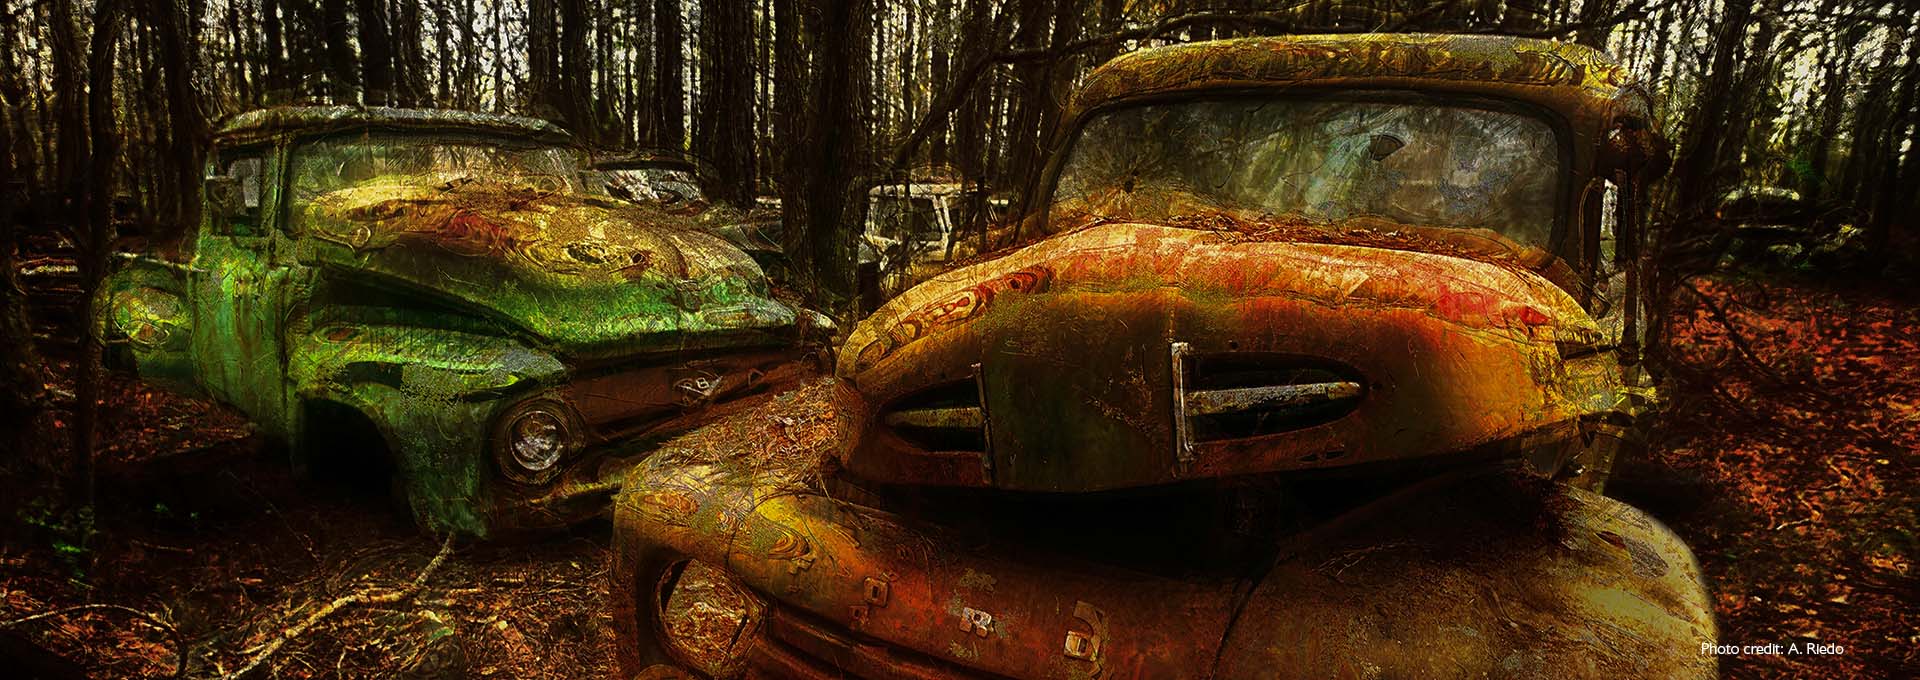 Immagine di due vecchie auto verde e marrone arrugginite in un cimitero di automobili nei boschi fotografate da utenti di apparecchi acustici Bernafon Alpha